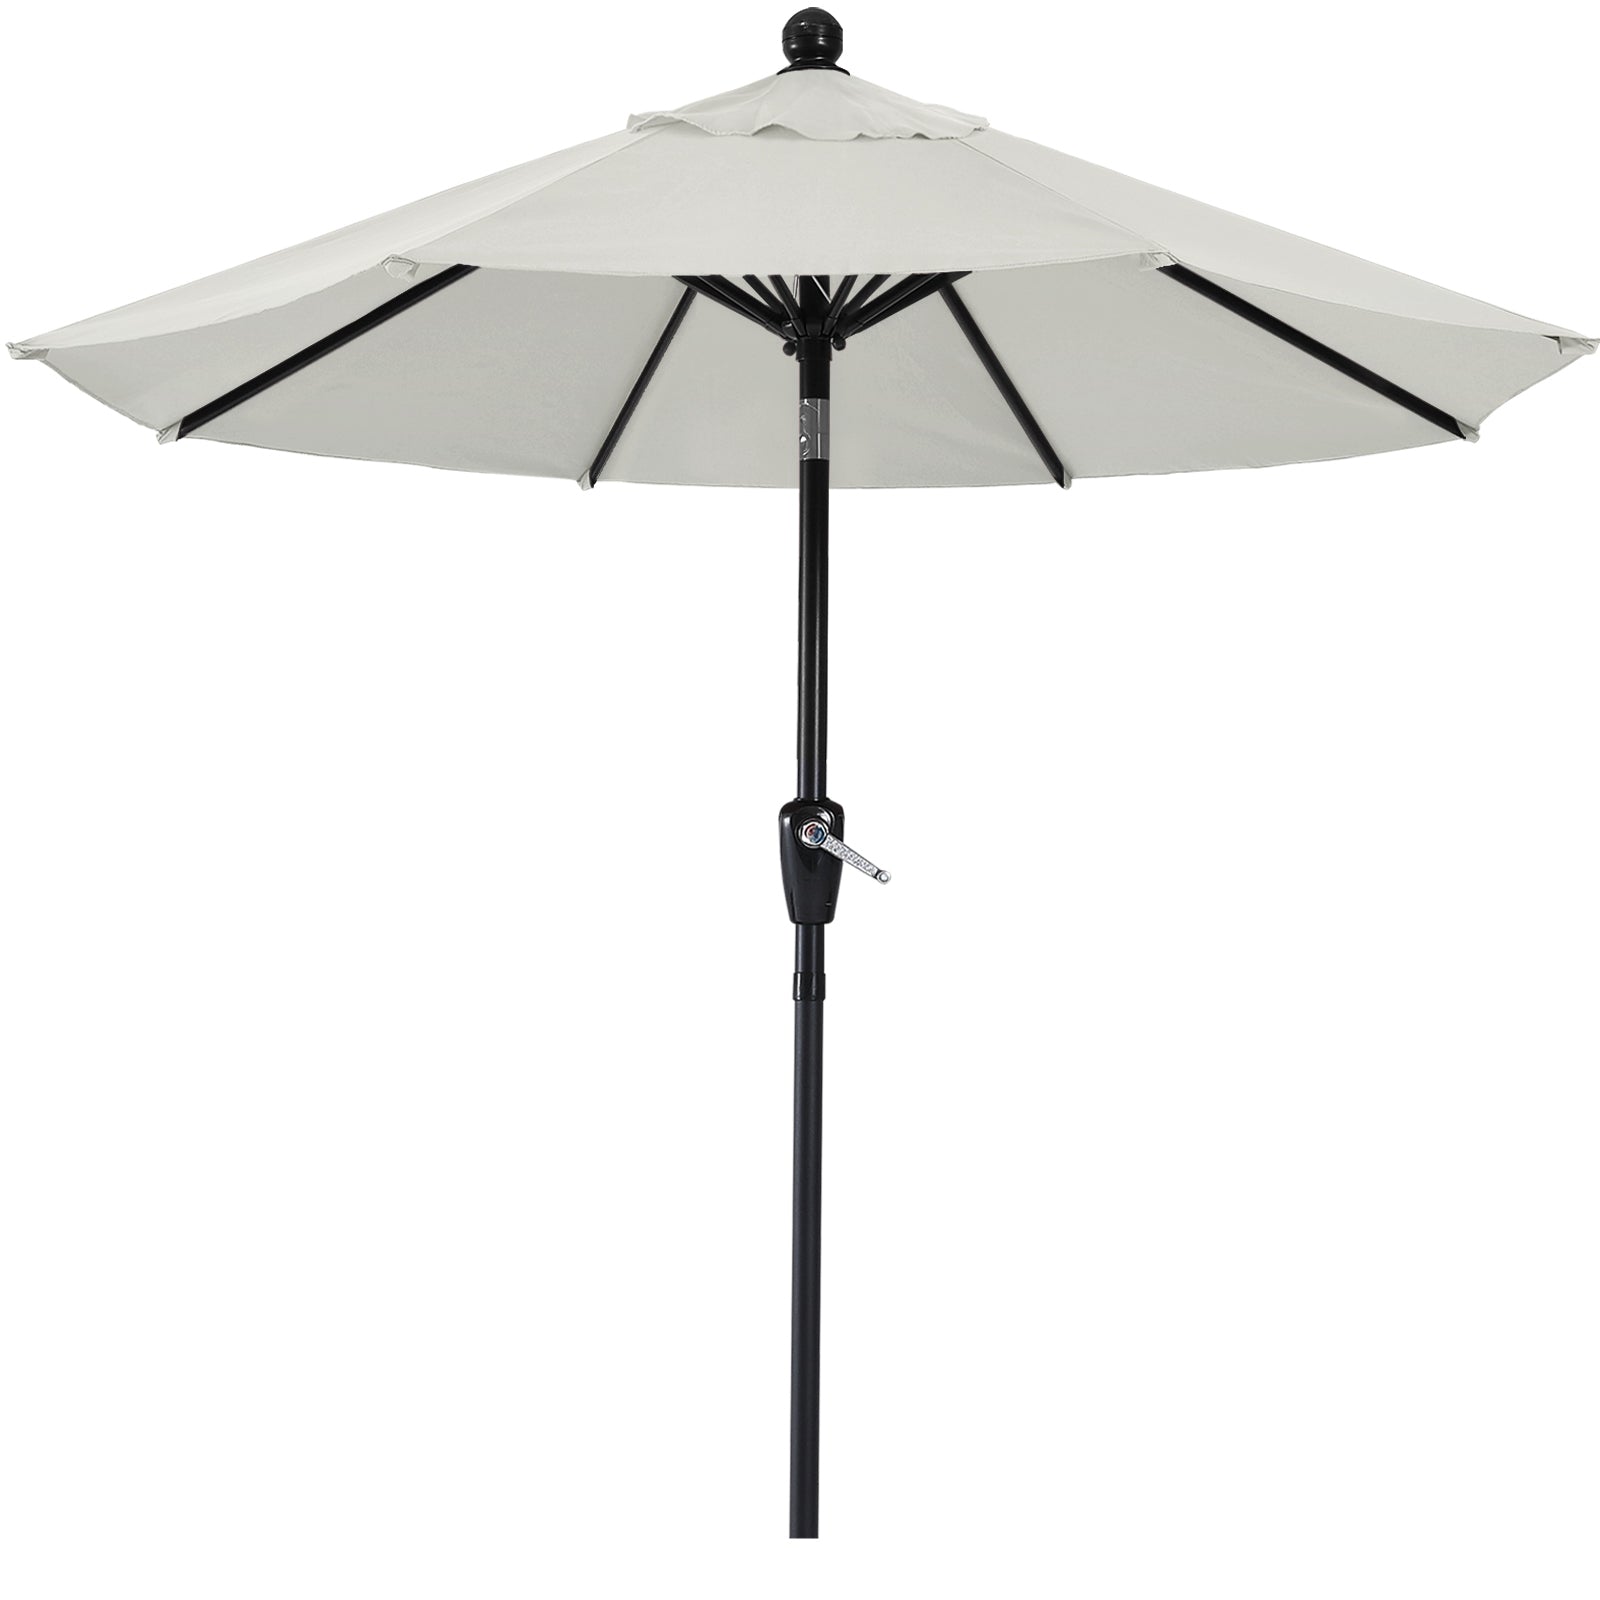 Patio Umbrella with Push Button Tilt  8 Ribs